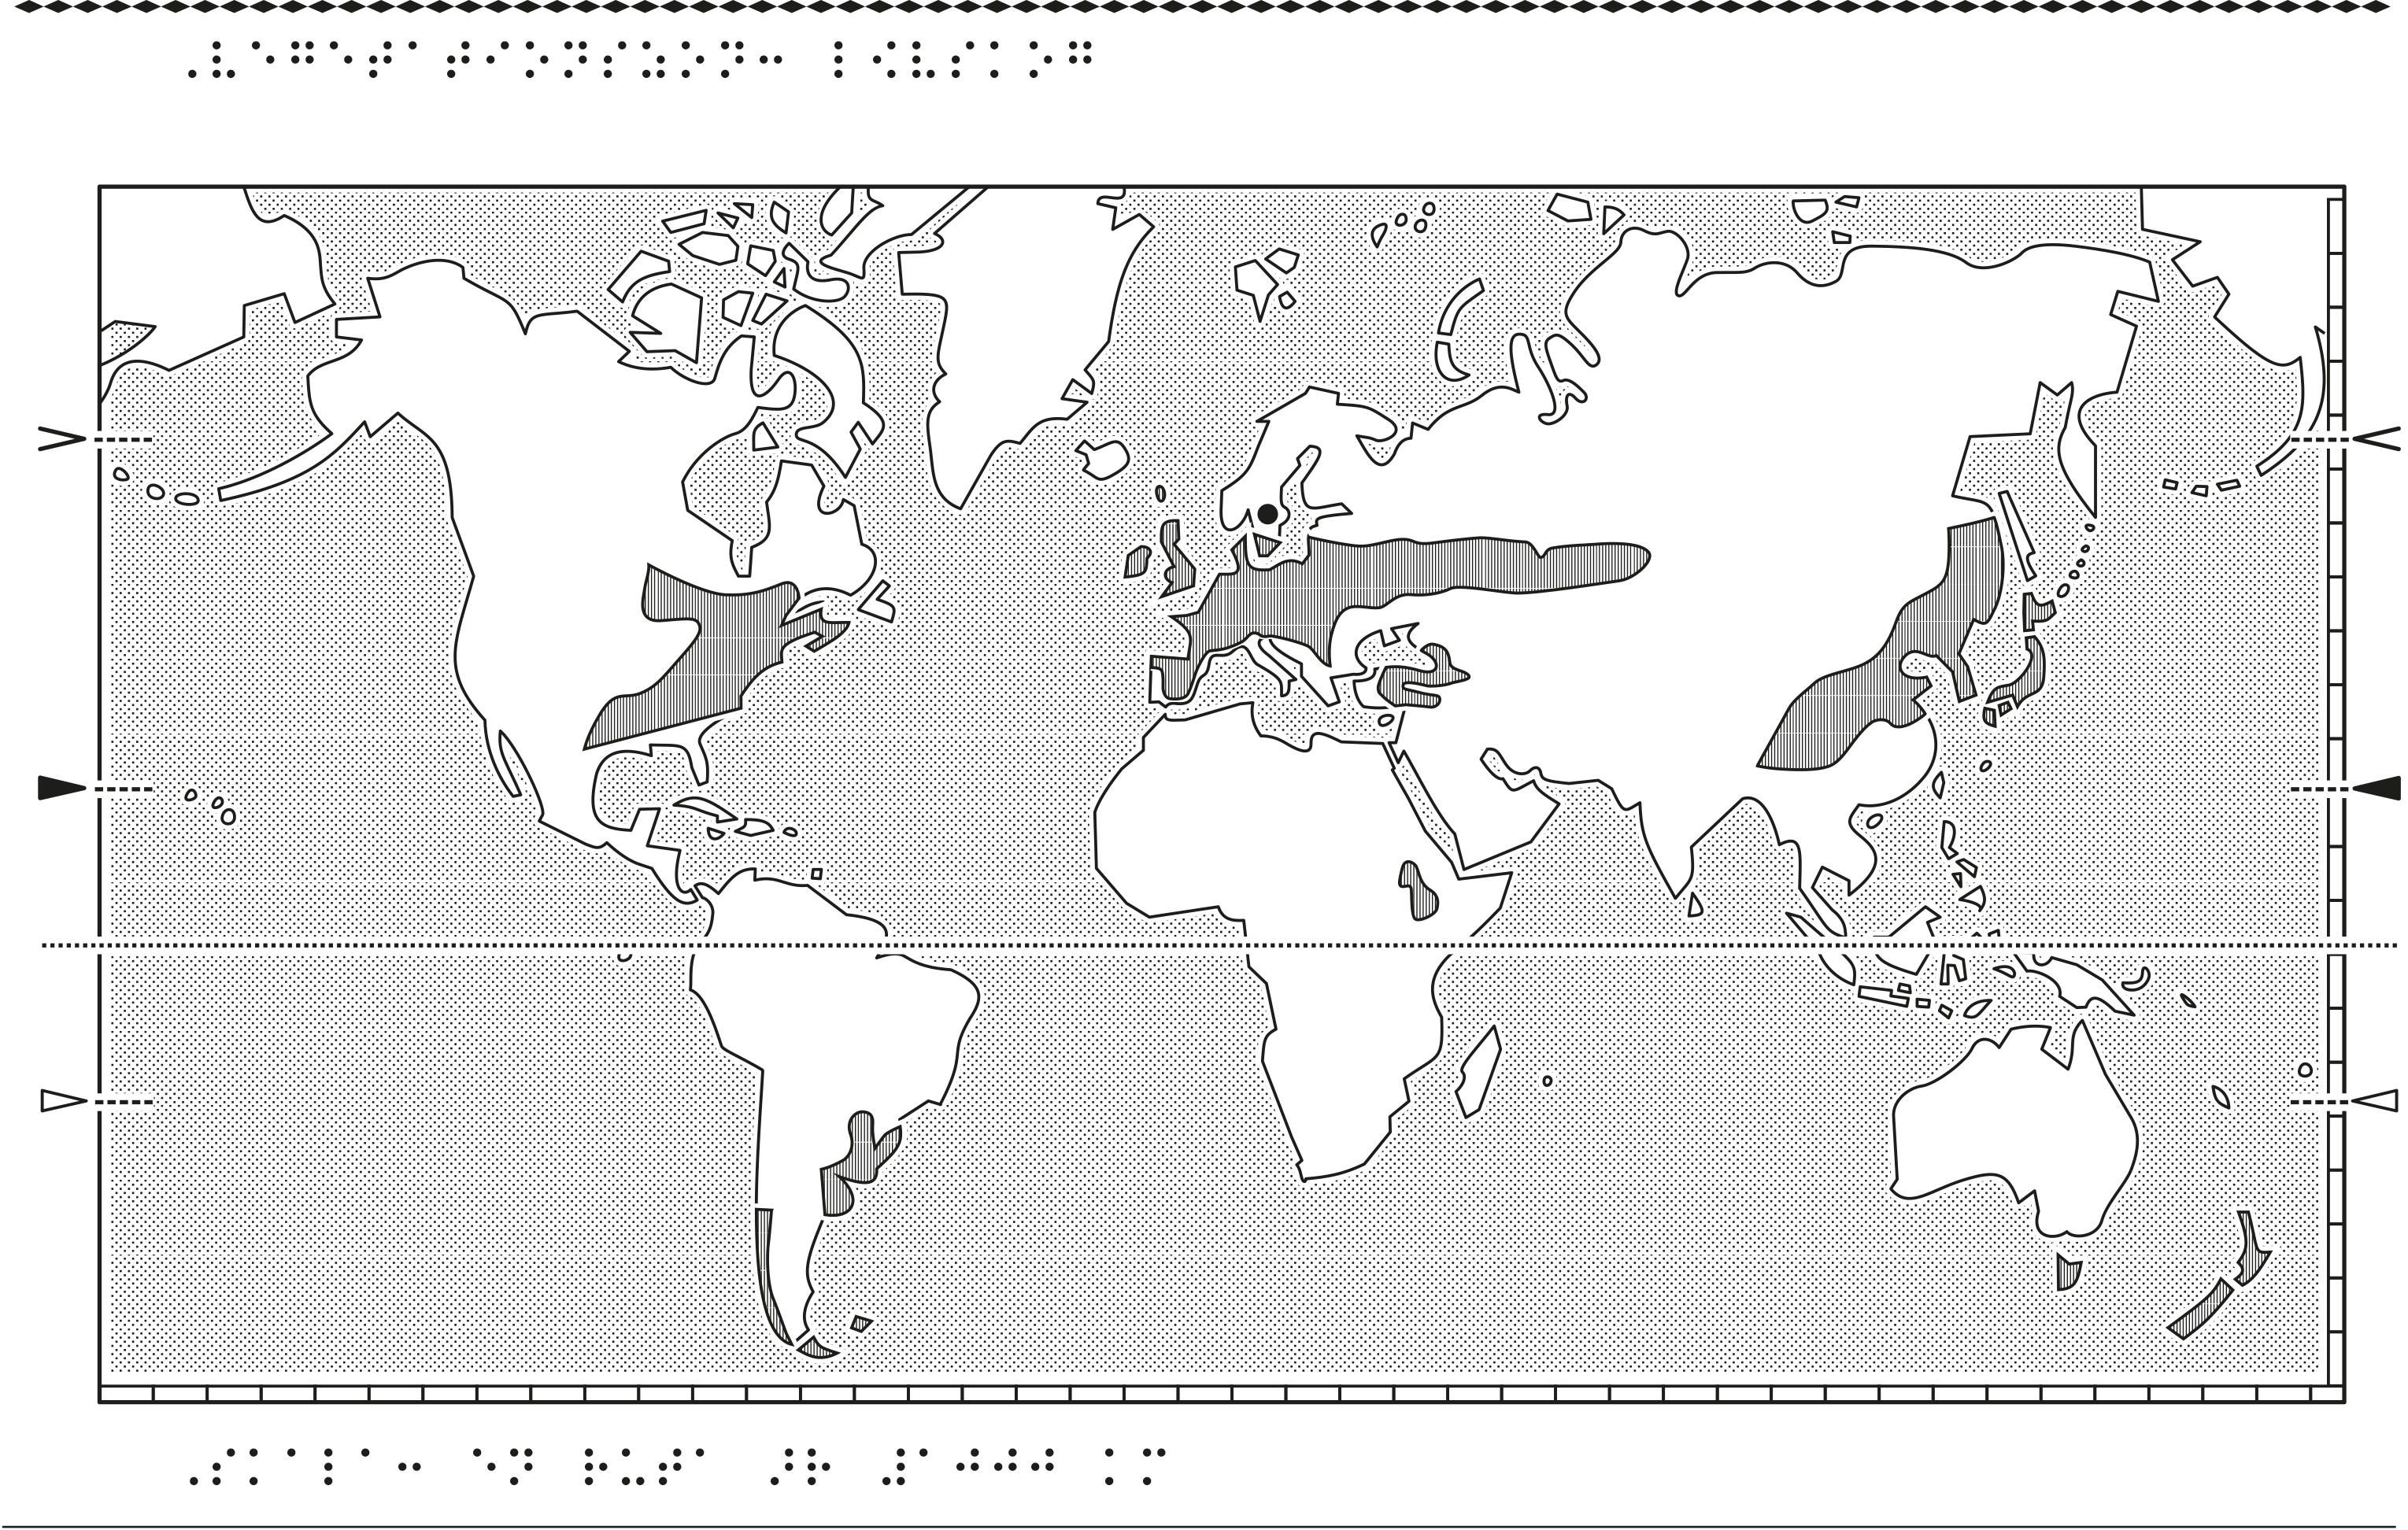 Världskarta i relief med lövskog markerat.